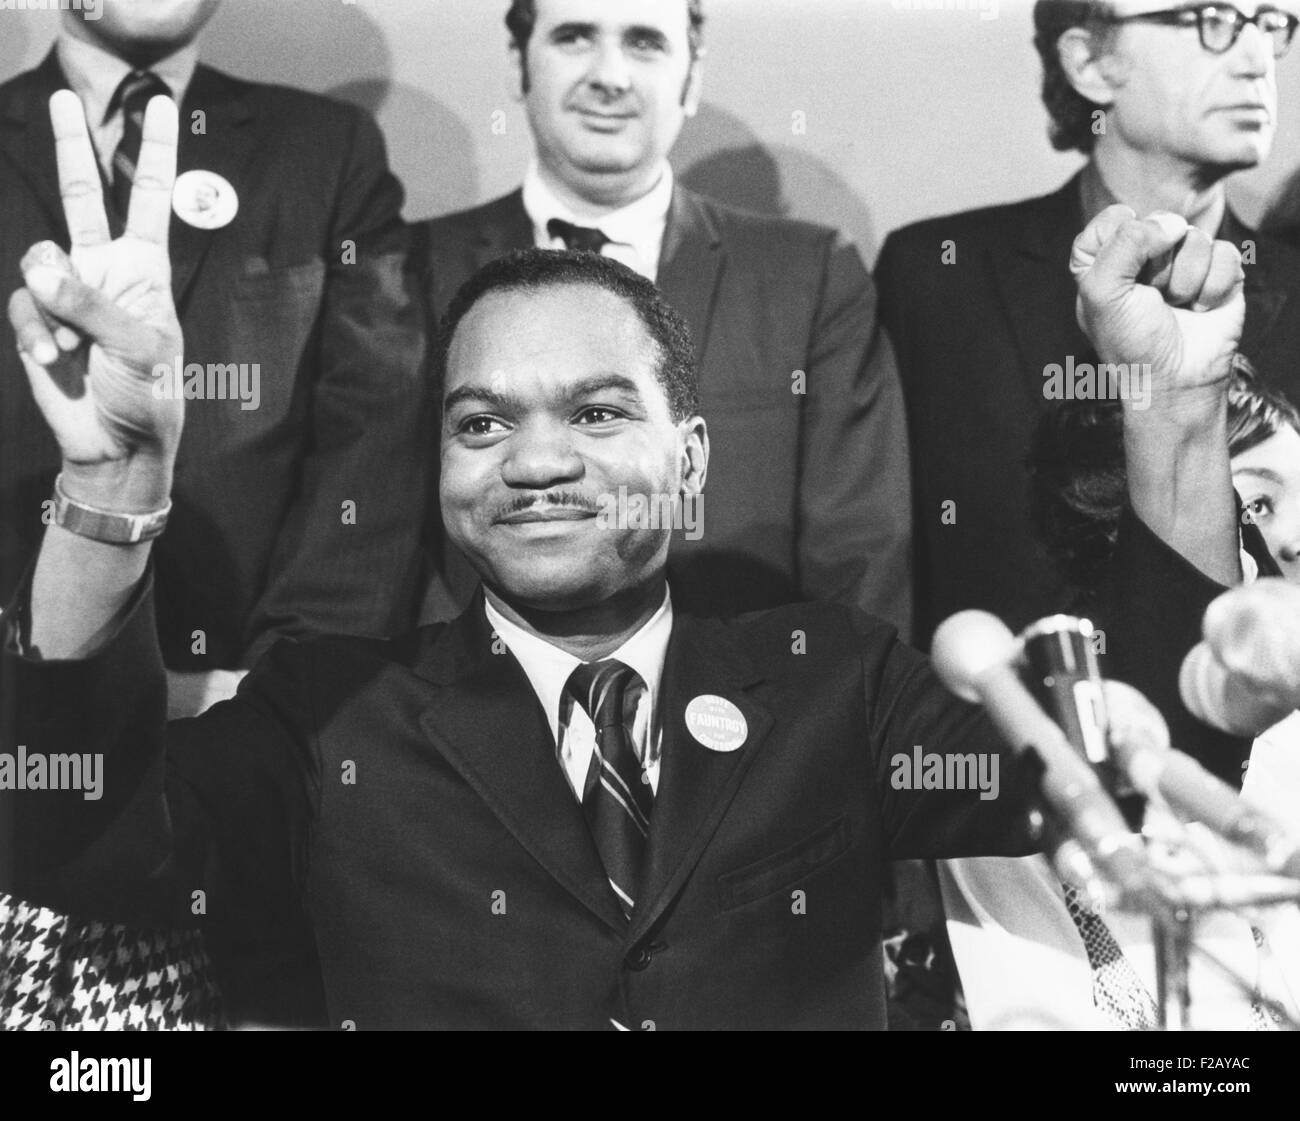 Pfr. Walter Fauntroy gab eine "V" für Victory-Zeichen nach Washington, D.C. Vorwahlen zu gewinnen. 13. Januar 1971. Zwei Monate später gewann er die Wahl zum US-Repräsentantenhaus als nicht stimmberechtigte Delegierte. (CSU 2015 9 816) Stockfoto